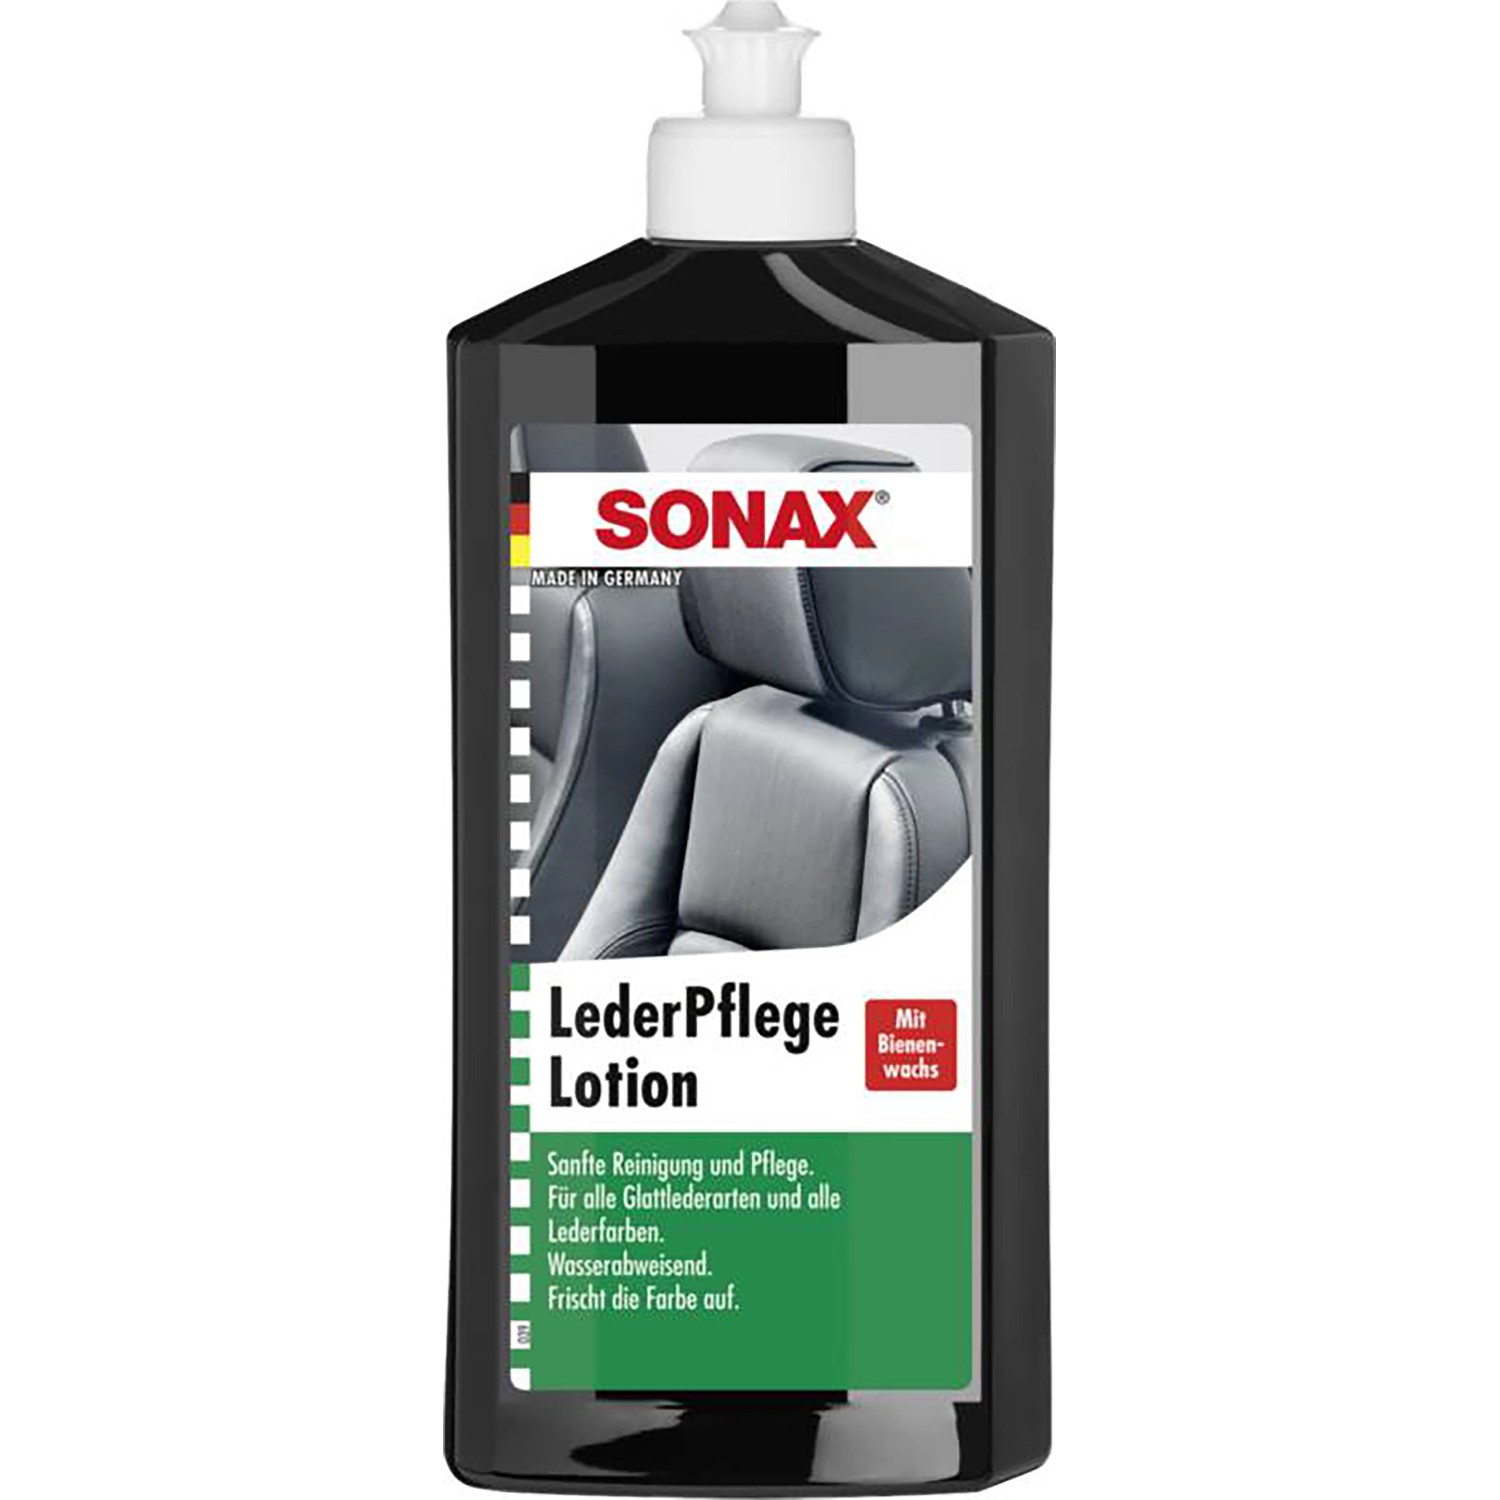 Sonax Lederpflegelotion 500 ml günstig online kaufen